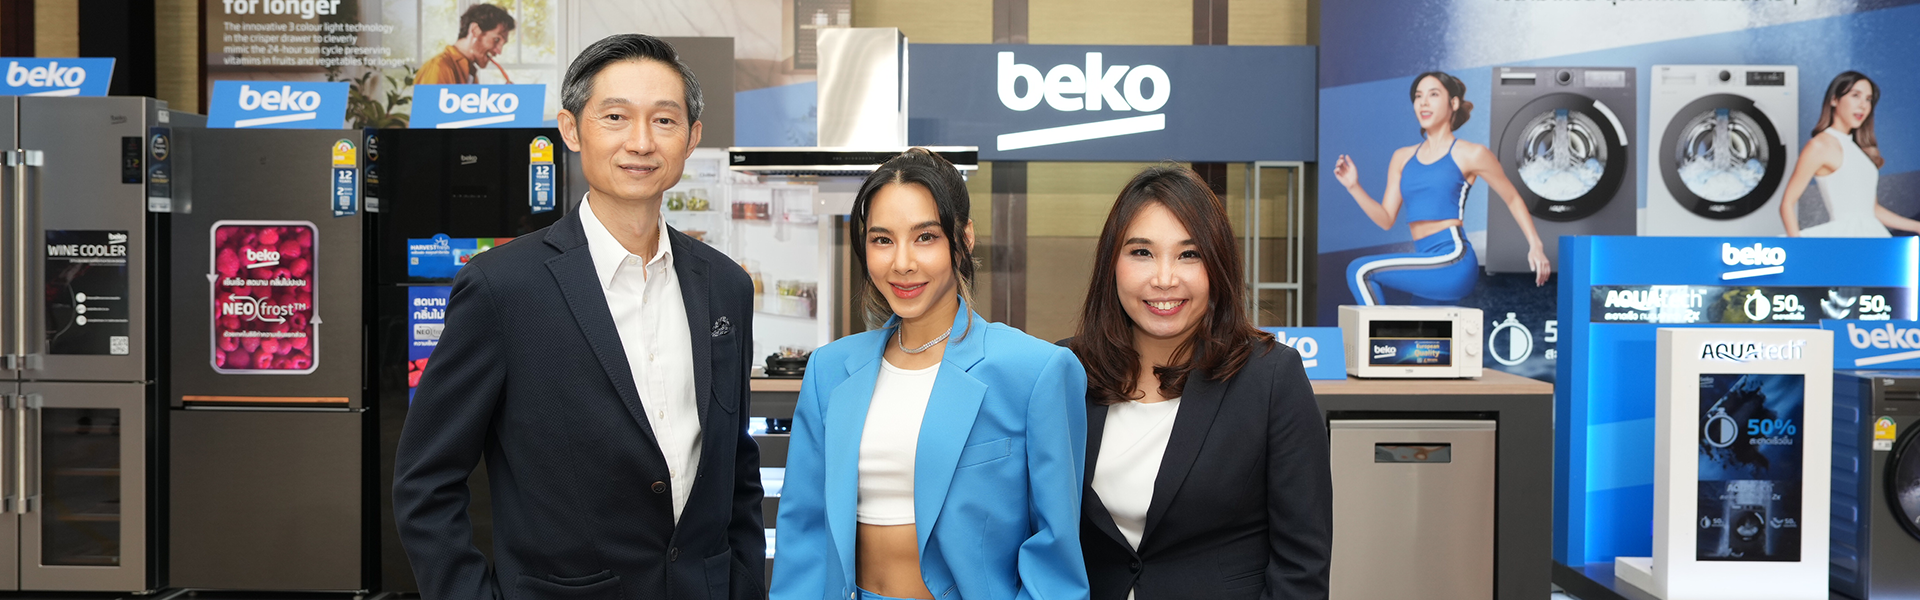 Beko จับมือ เบเบ้ ธันย์ชนก ร่วมจุดประกายแรงบันดาลใจให้ทุกคนมีสุขภาพดีได้ง่ายๆ  ผ่านงานอีเวนท์ครั้งยิ่งใหญ่แห่งปี “Beko Live like a Pro”